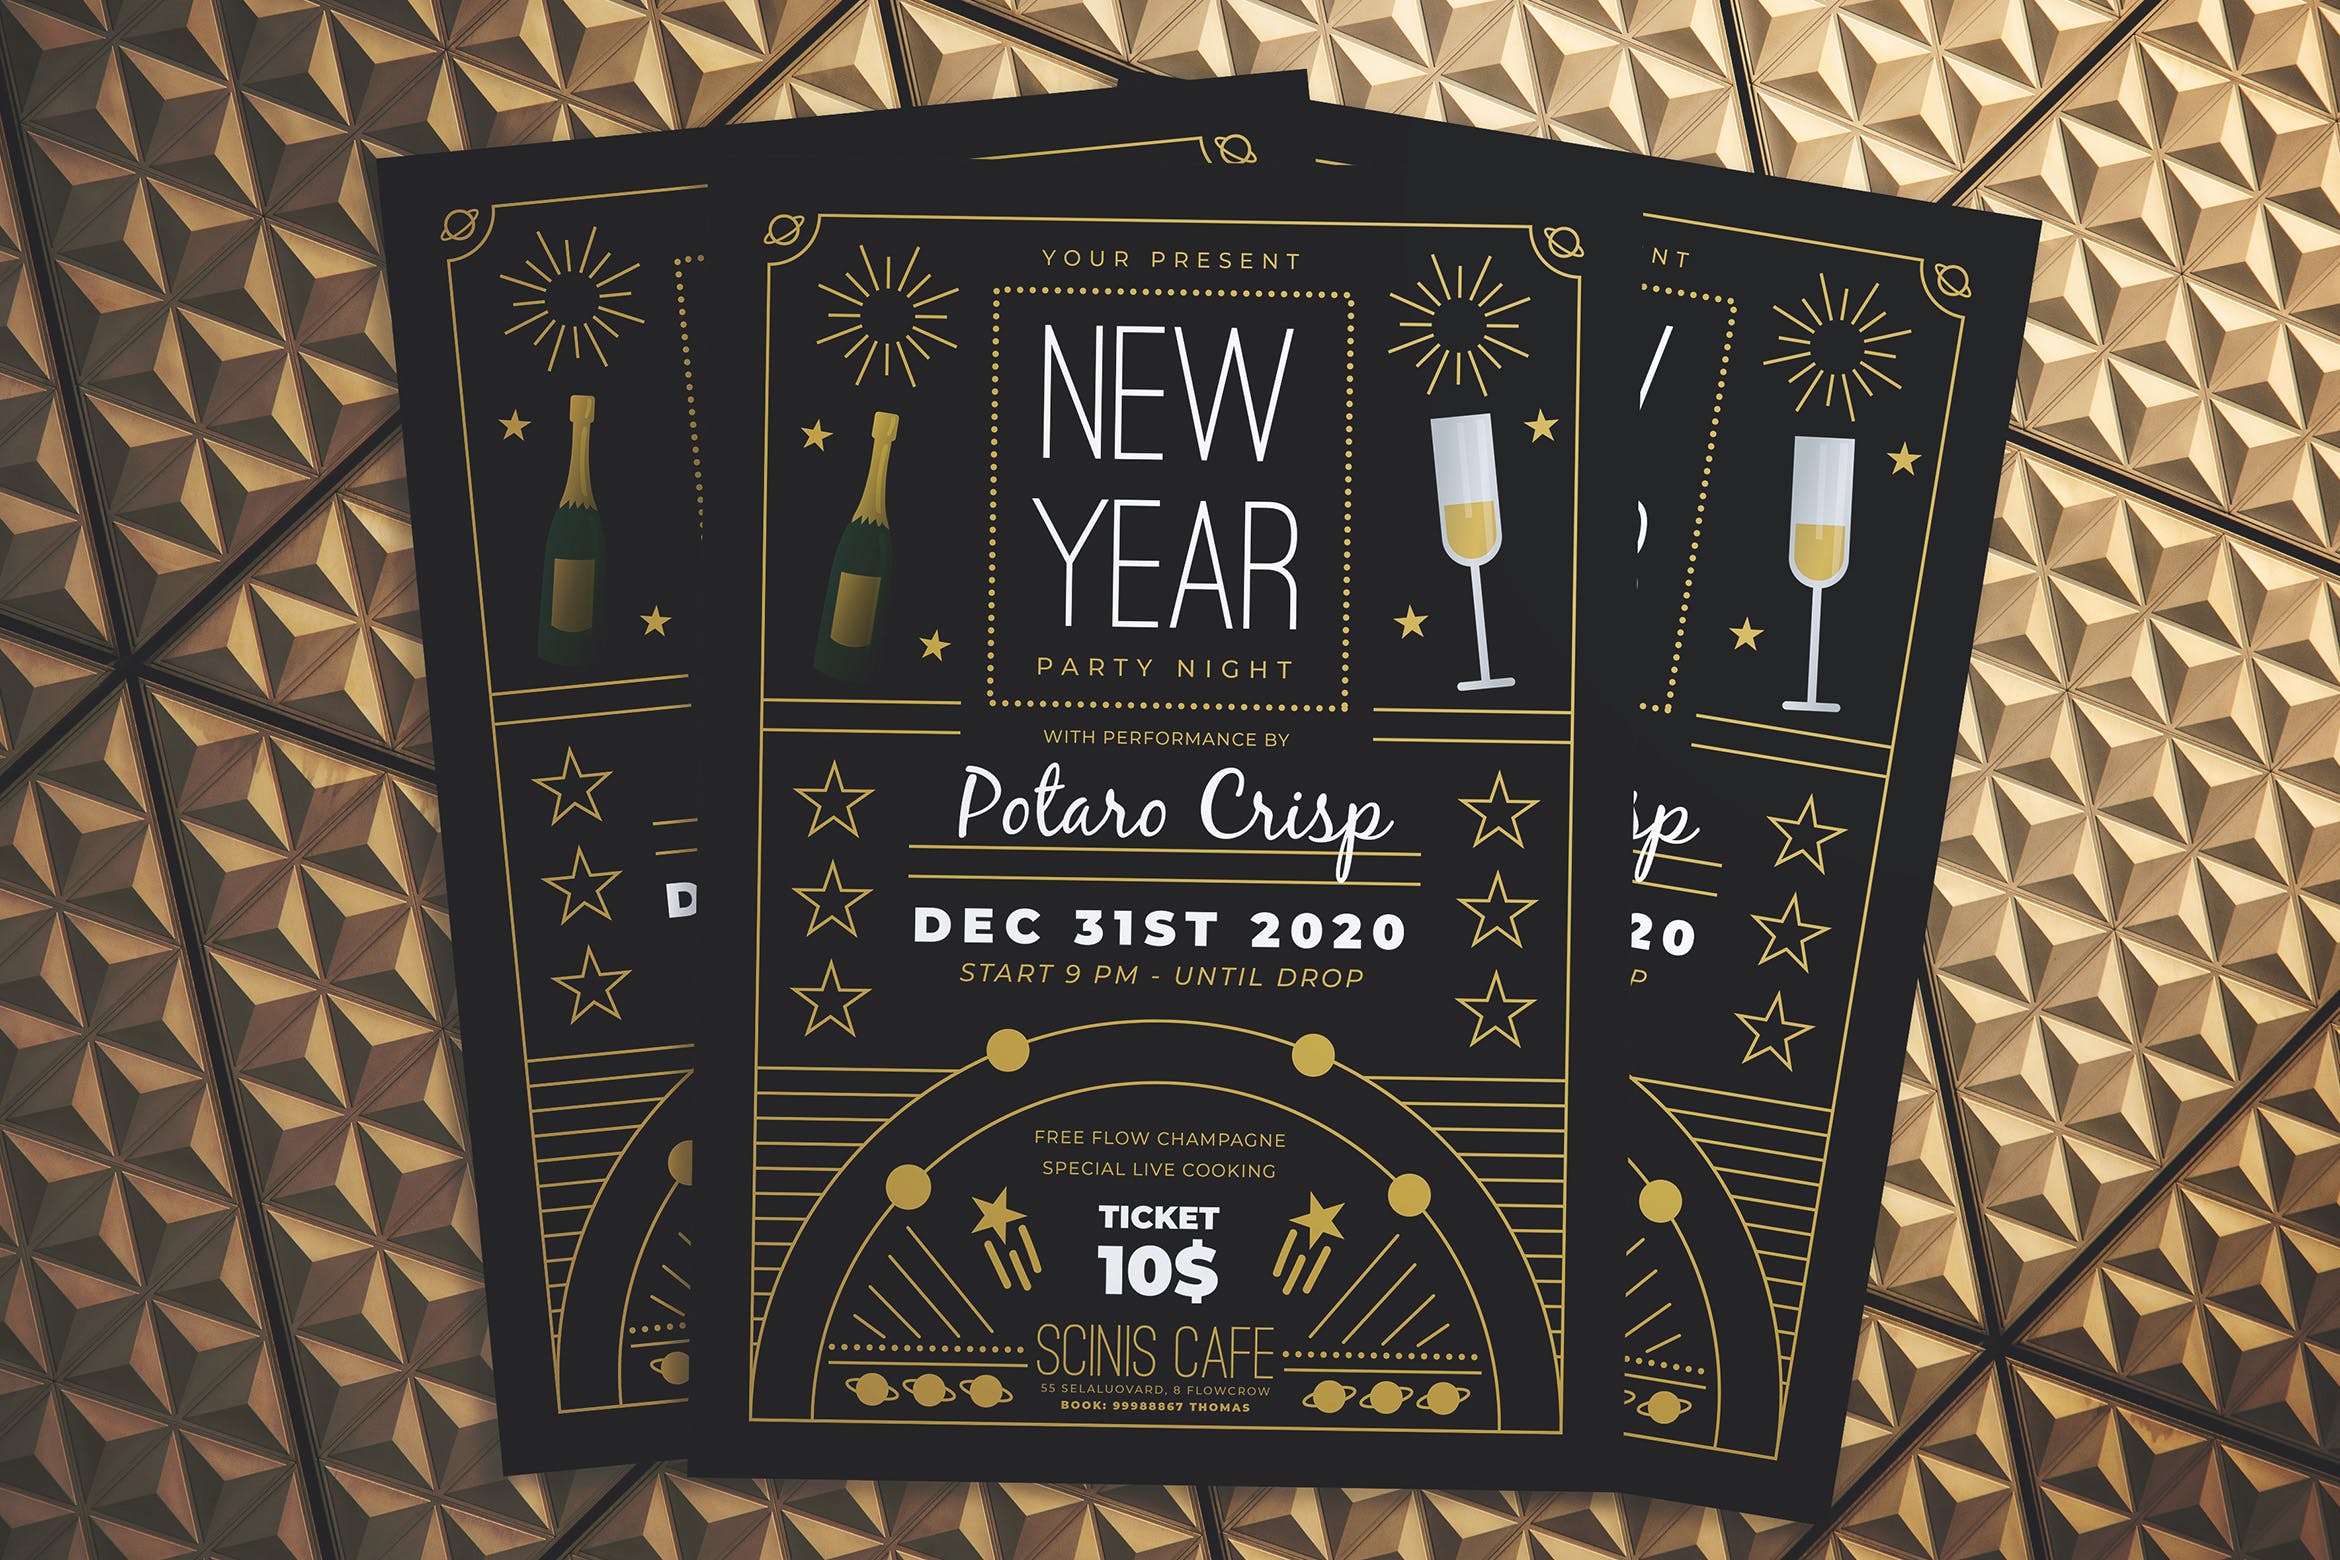 复古设计风格新年晚会海报传单非凡图库精选PSD模板 New Year Party Night Flyer插图